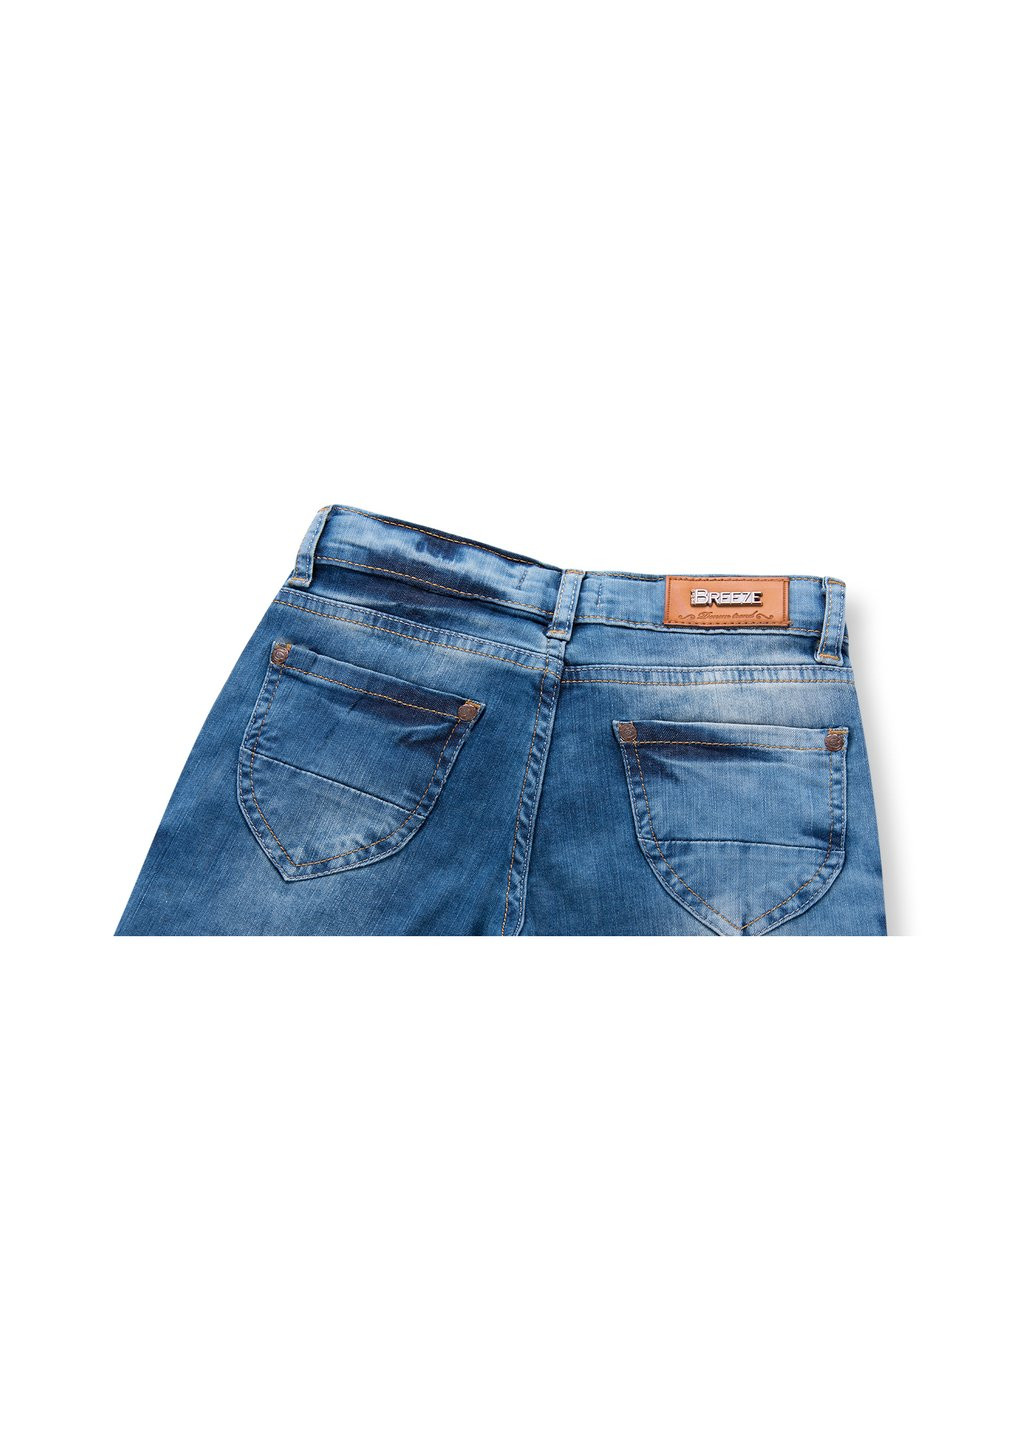 Голубые демисезонные джинсы с дырками (20069-140g-blue) Breeze